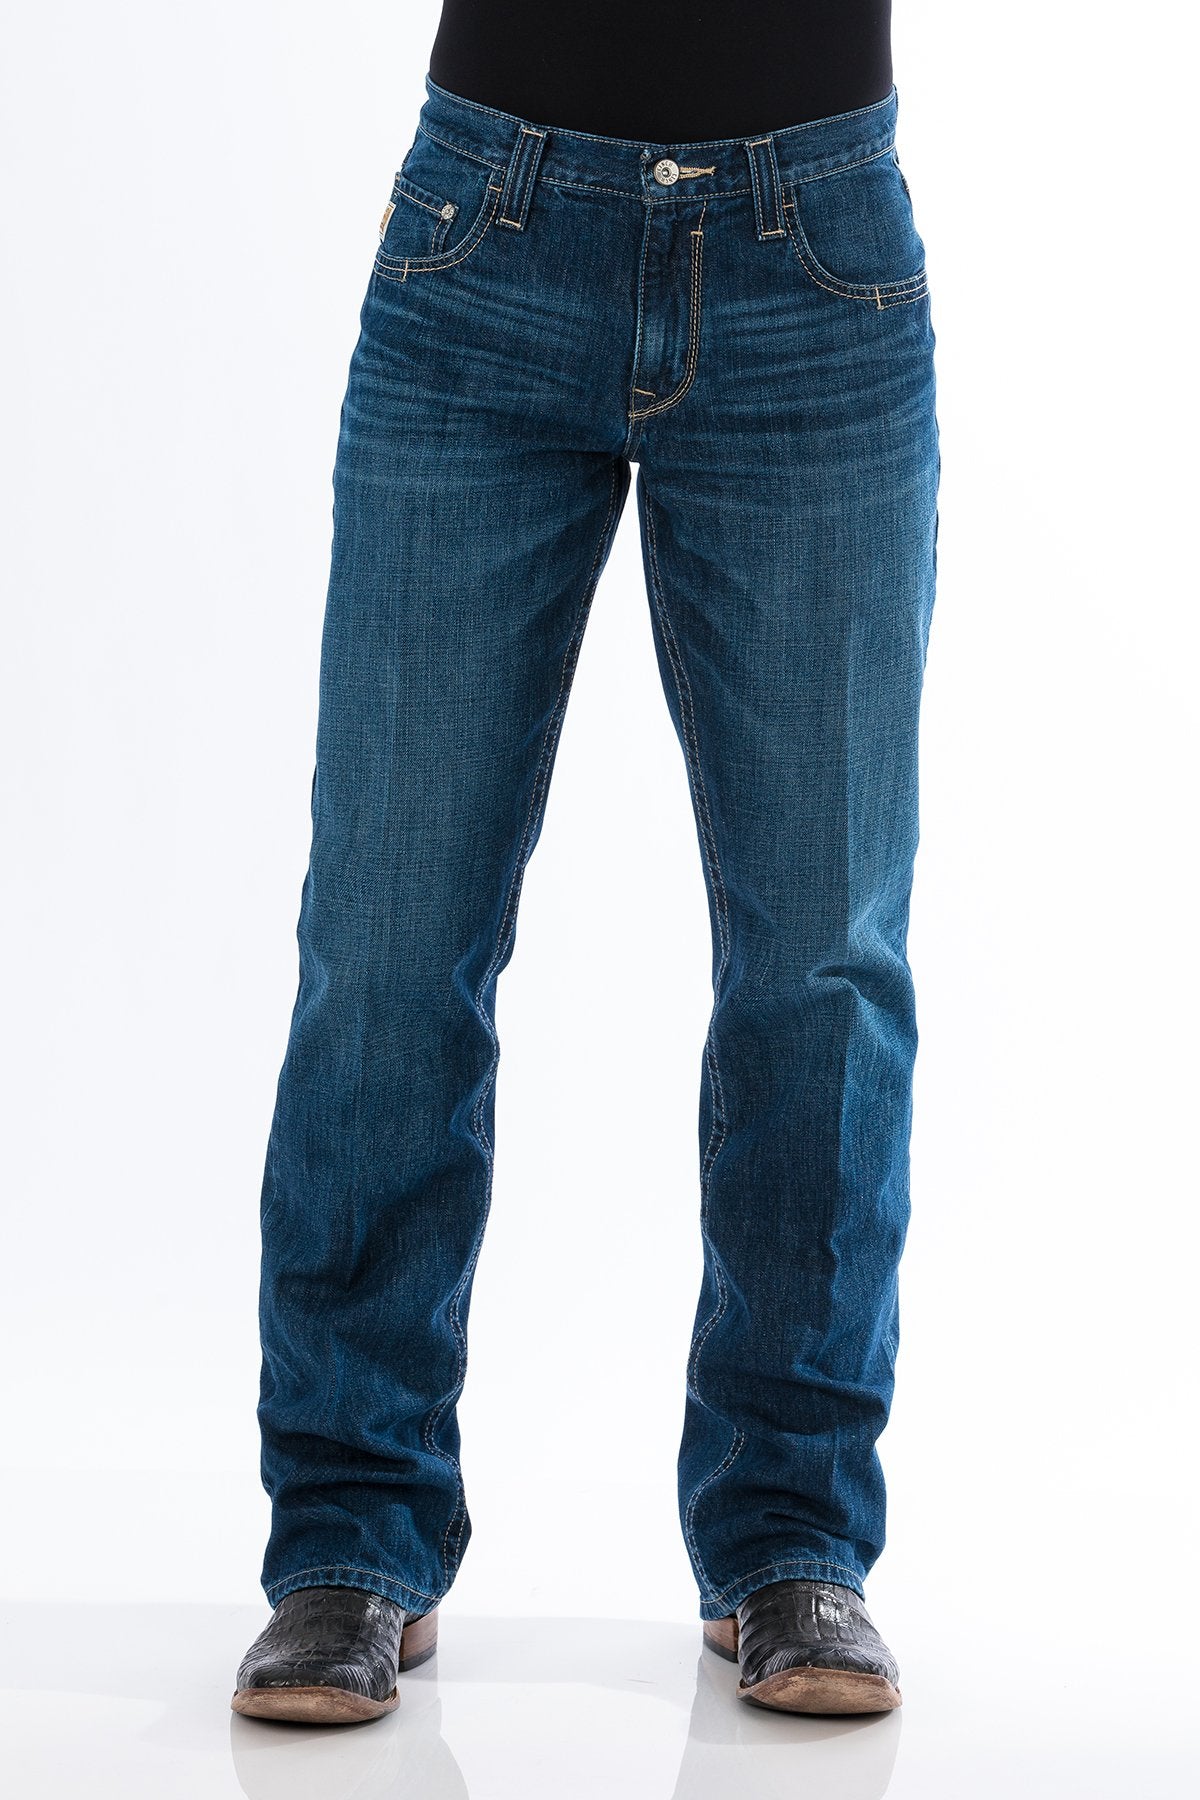 Men's Cinch Carter 2.0 Jeans